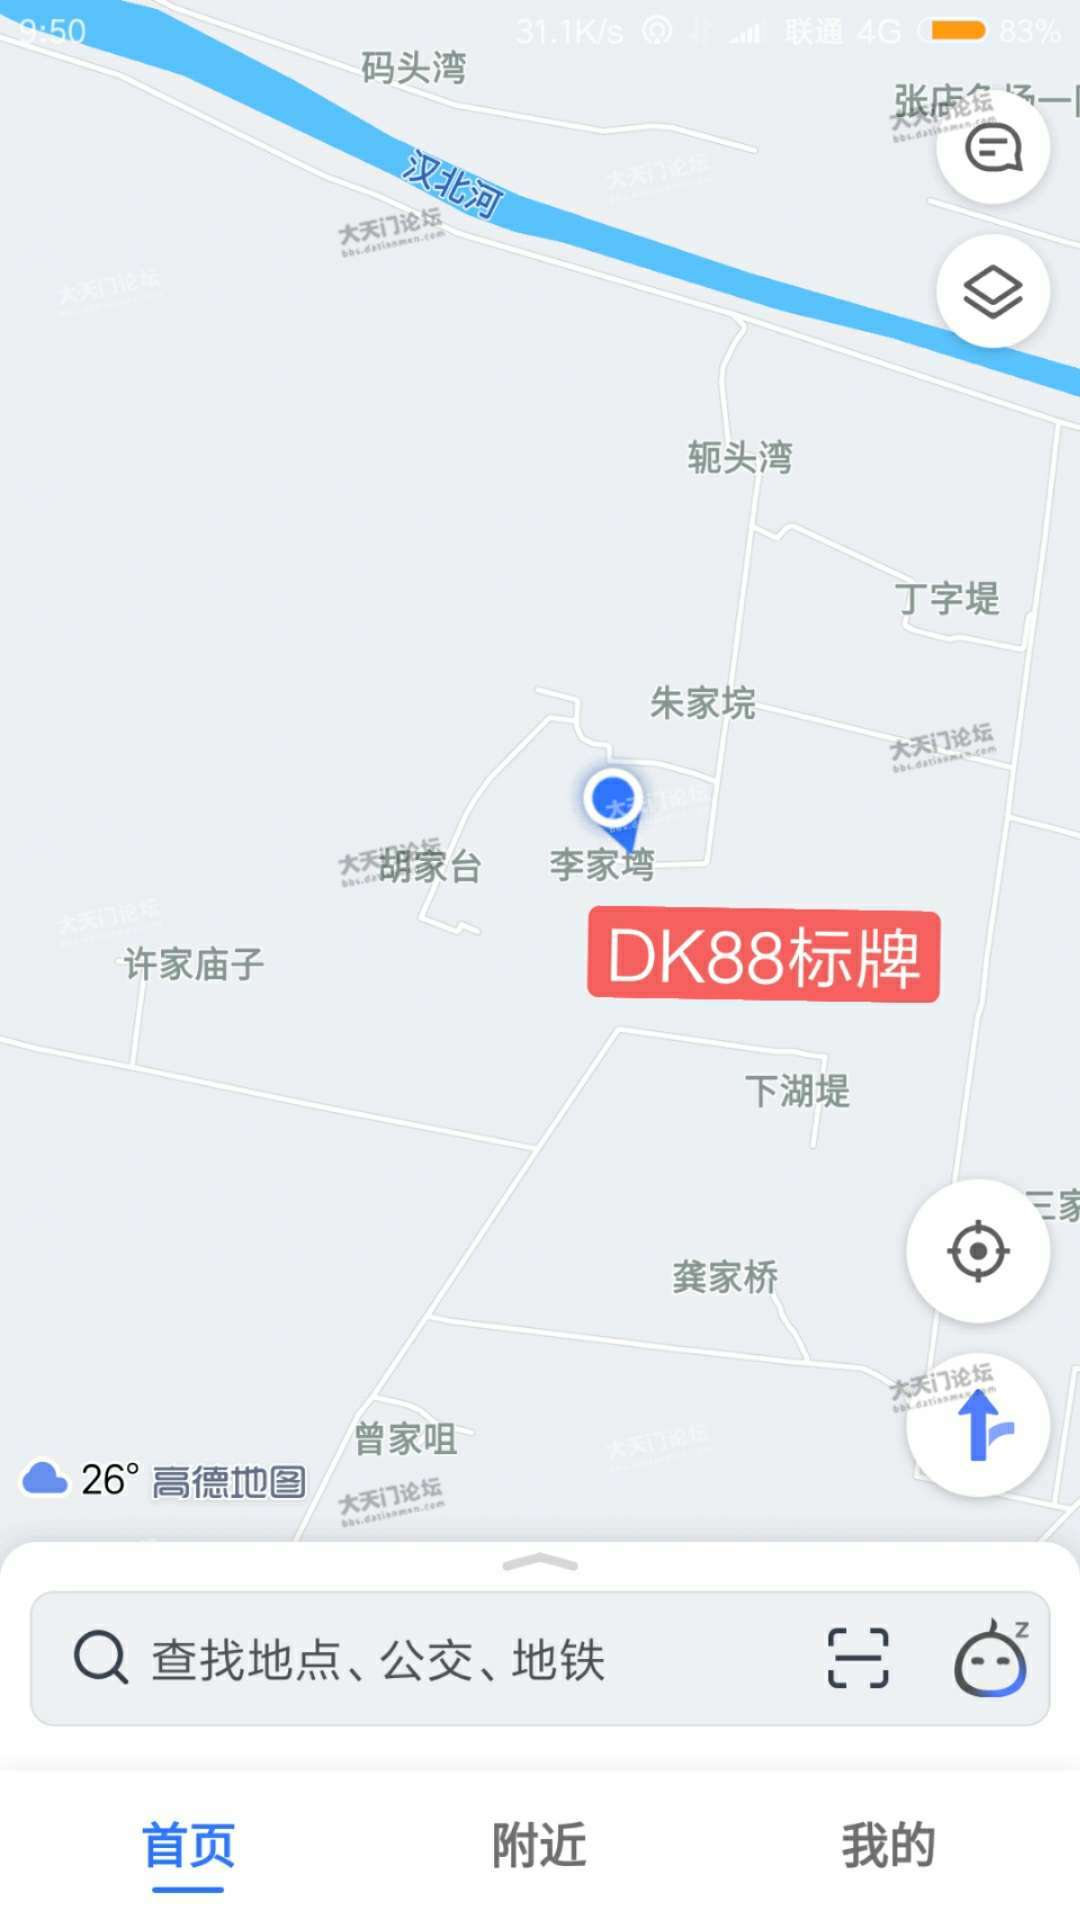 DK88处地址：杨林街道王施村李家塆（王施村委会北面100米）